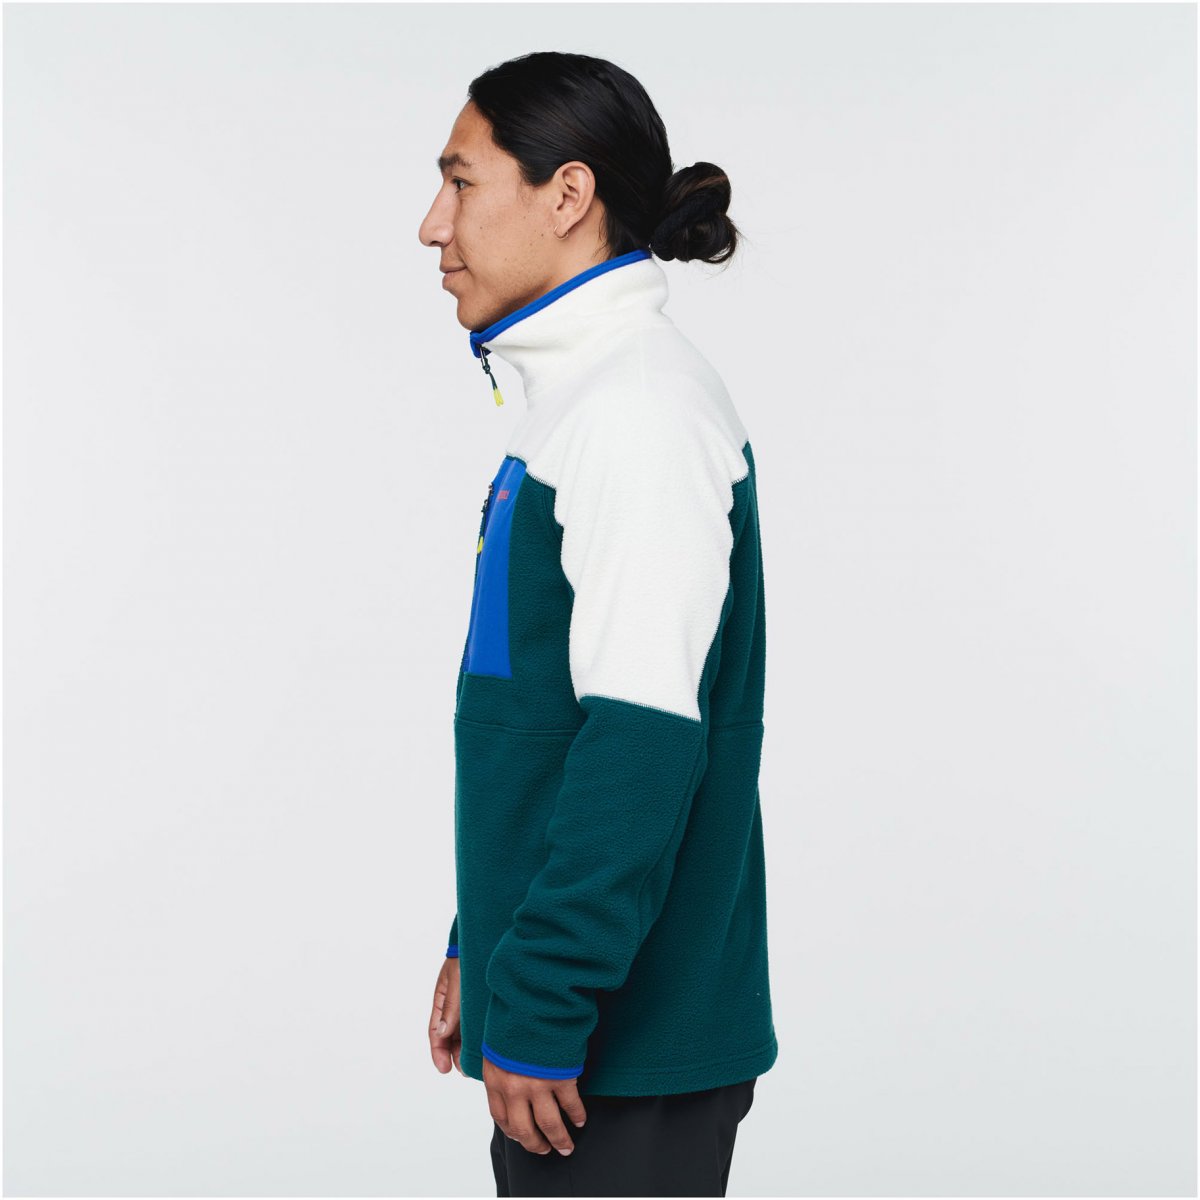 Abrazo Half-Zip Fleece Jacket M